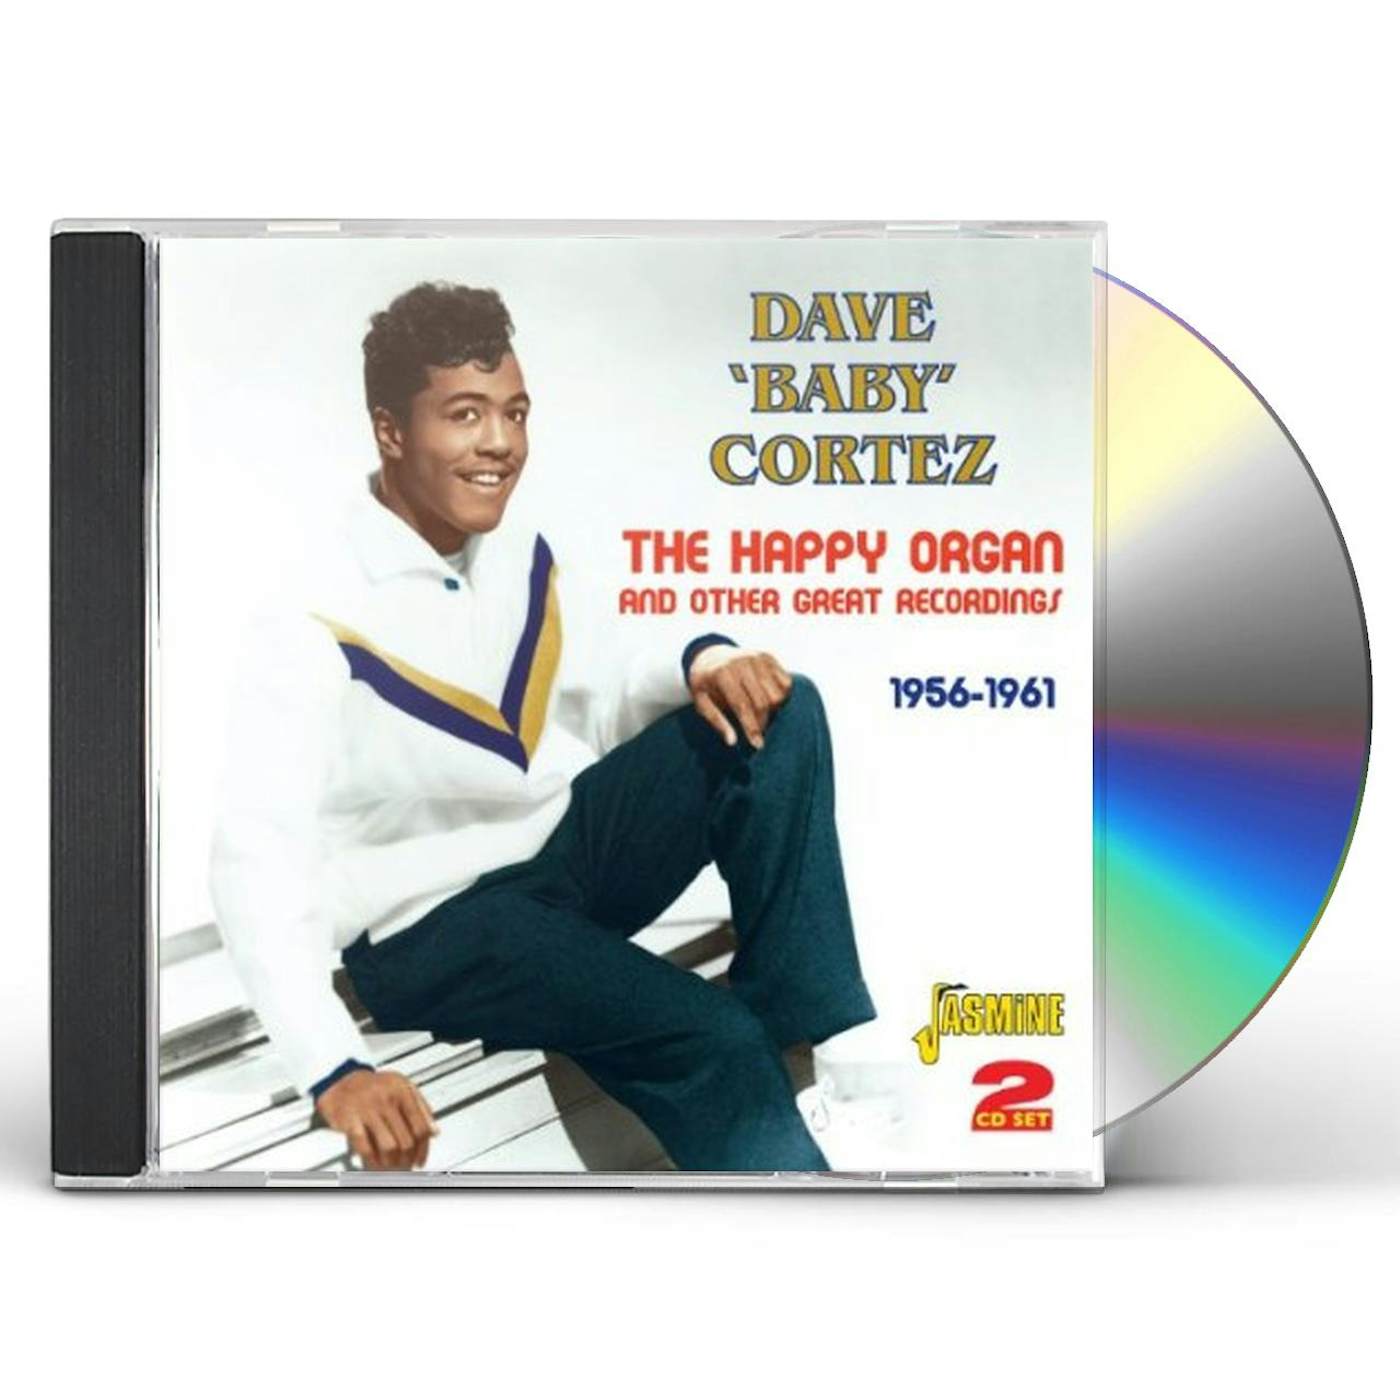 Dave "Baby" Cortez HAPPY ORGAN CD